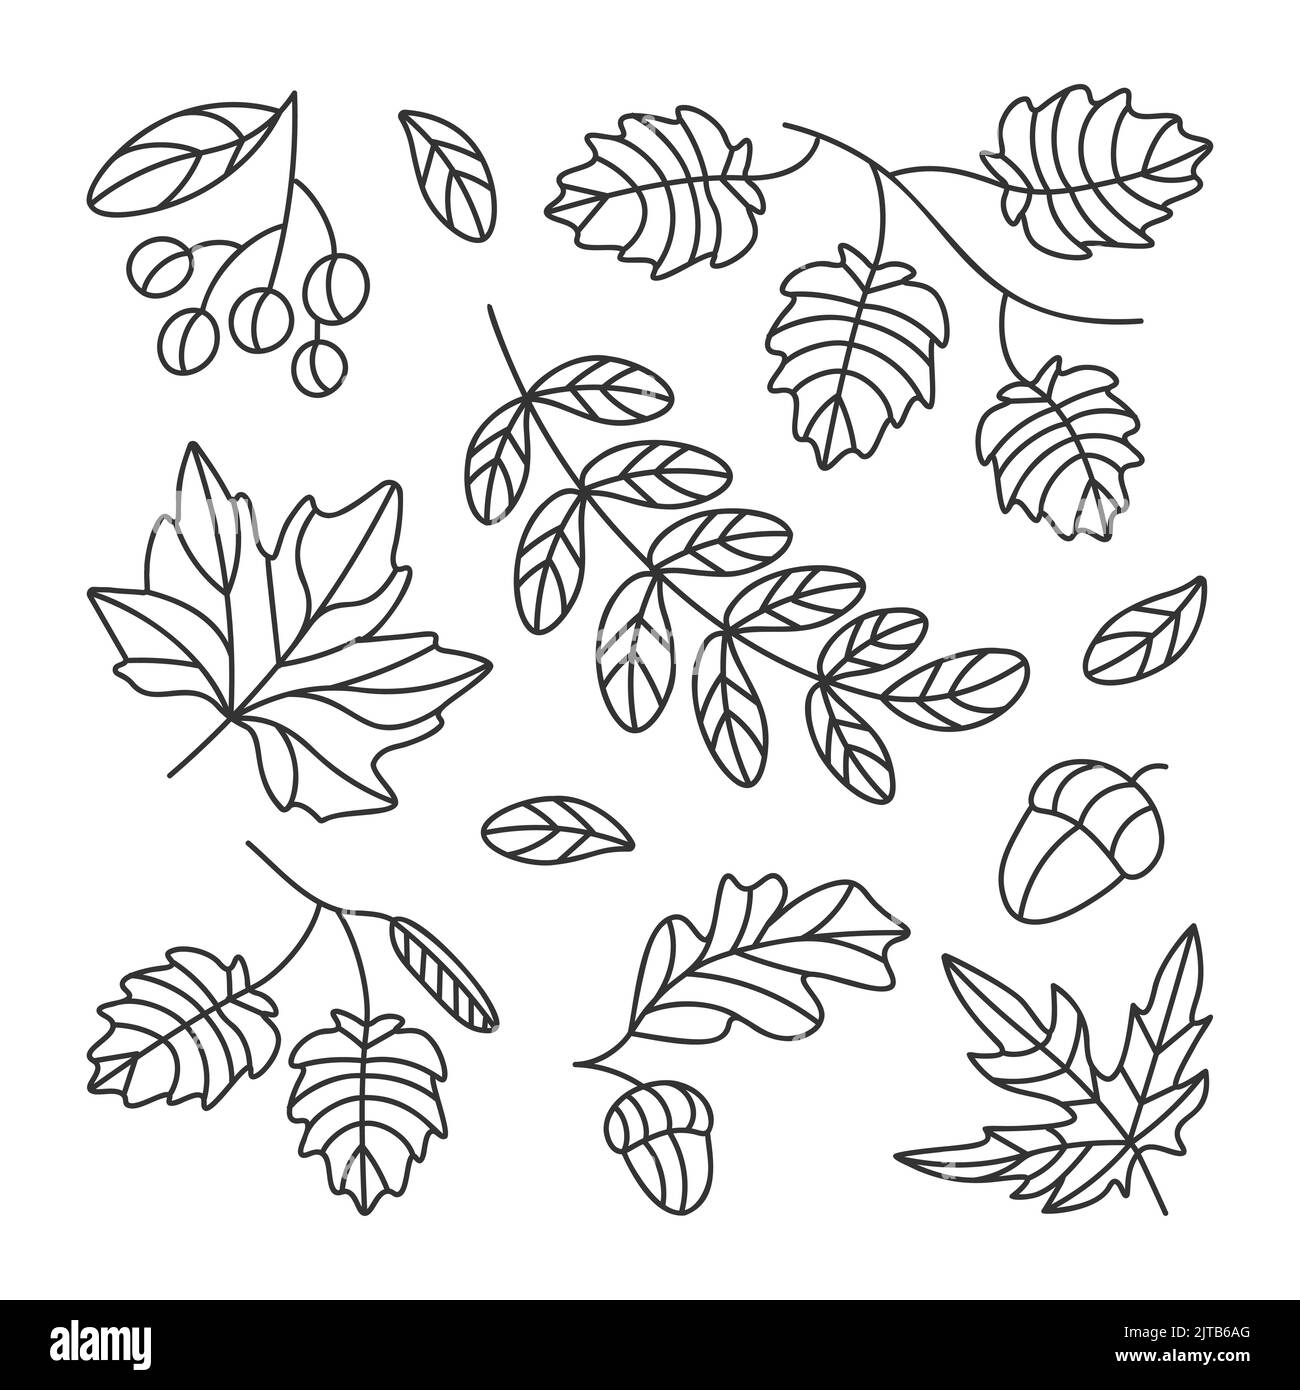 Beaucoup de feuilles vectorielles d'automne dessinées avec des lignes et un automne très beau Illustration de Vecteur